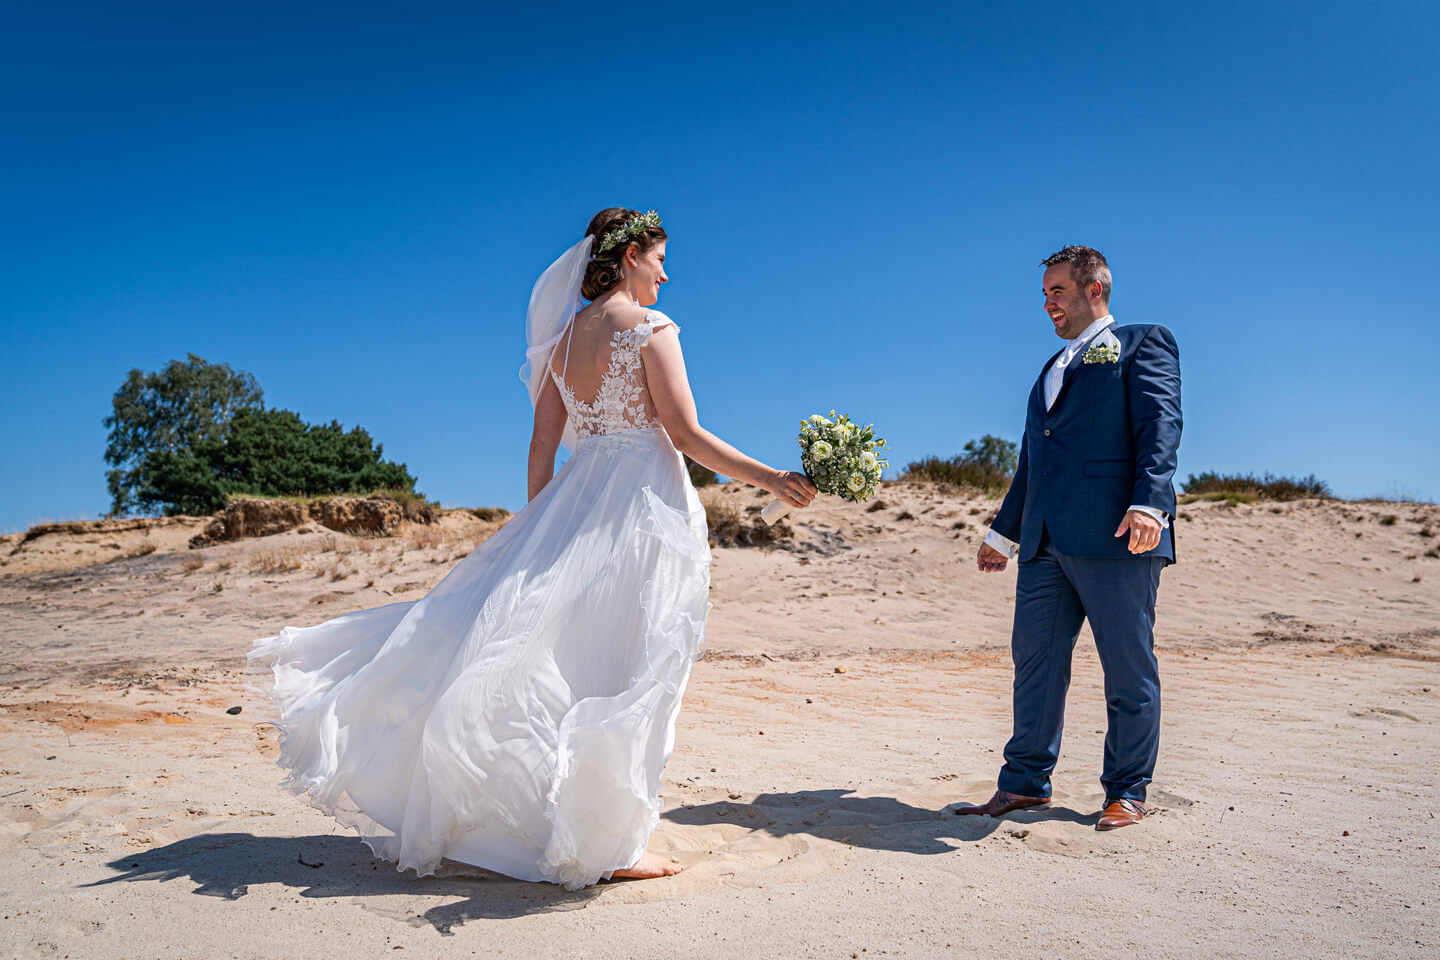 First Look vom Profi fotografieren lassen. Hier sieht sich das Hochzeitspaar erstmalig auf einer Sandfläche in der Heide.